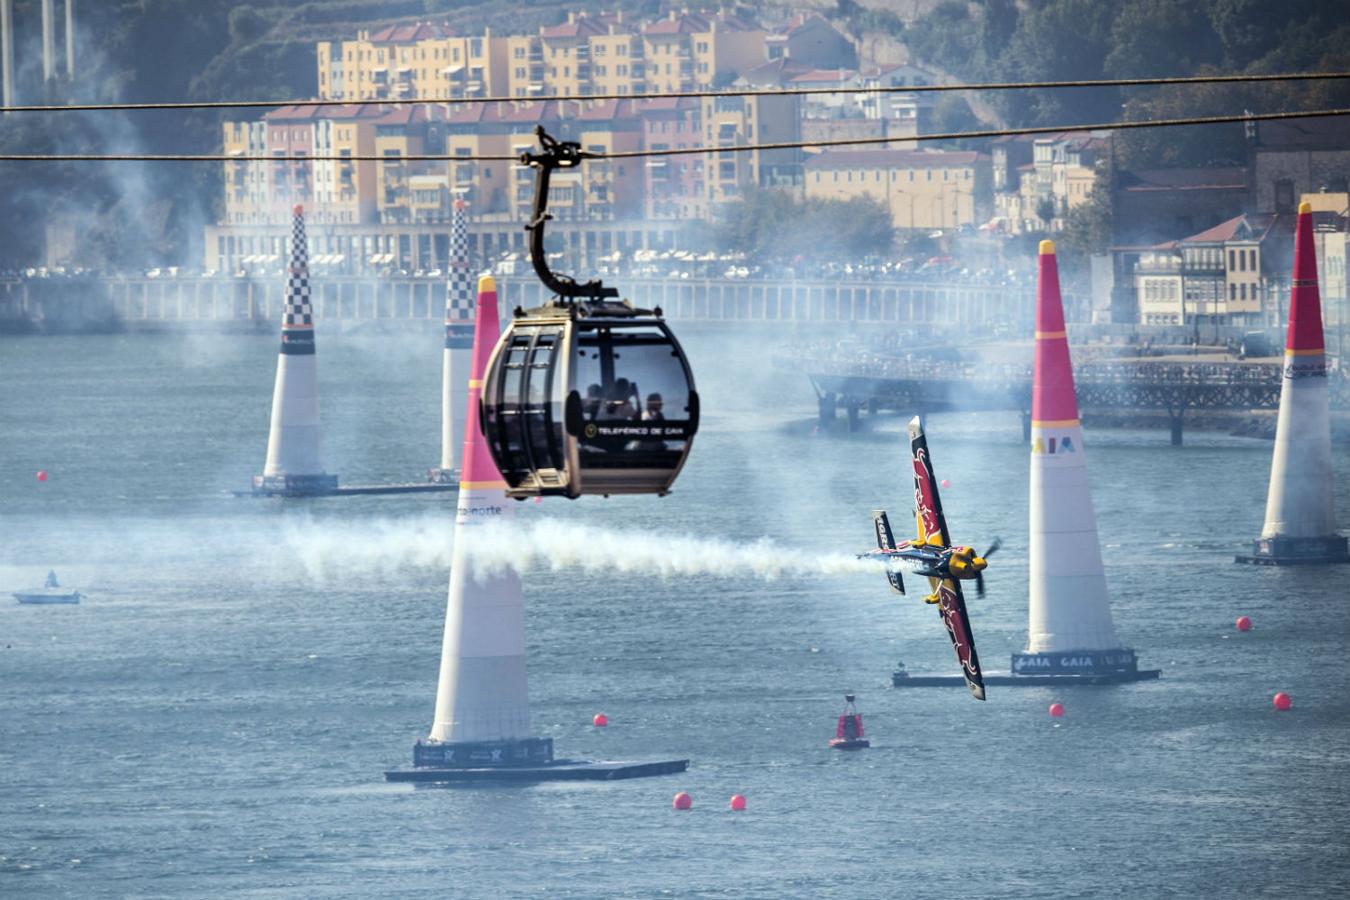 El recorrido de Oporto de la Red Bull Air Race está considerado como el más bello de las ocho pruebas que compnen el Campeonato del Mundo.